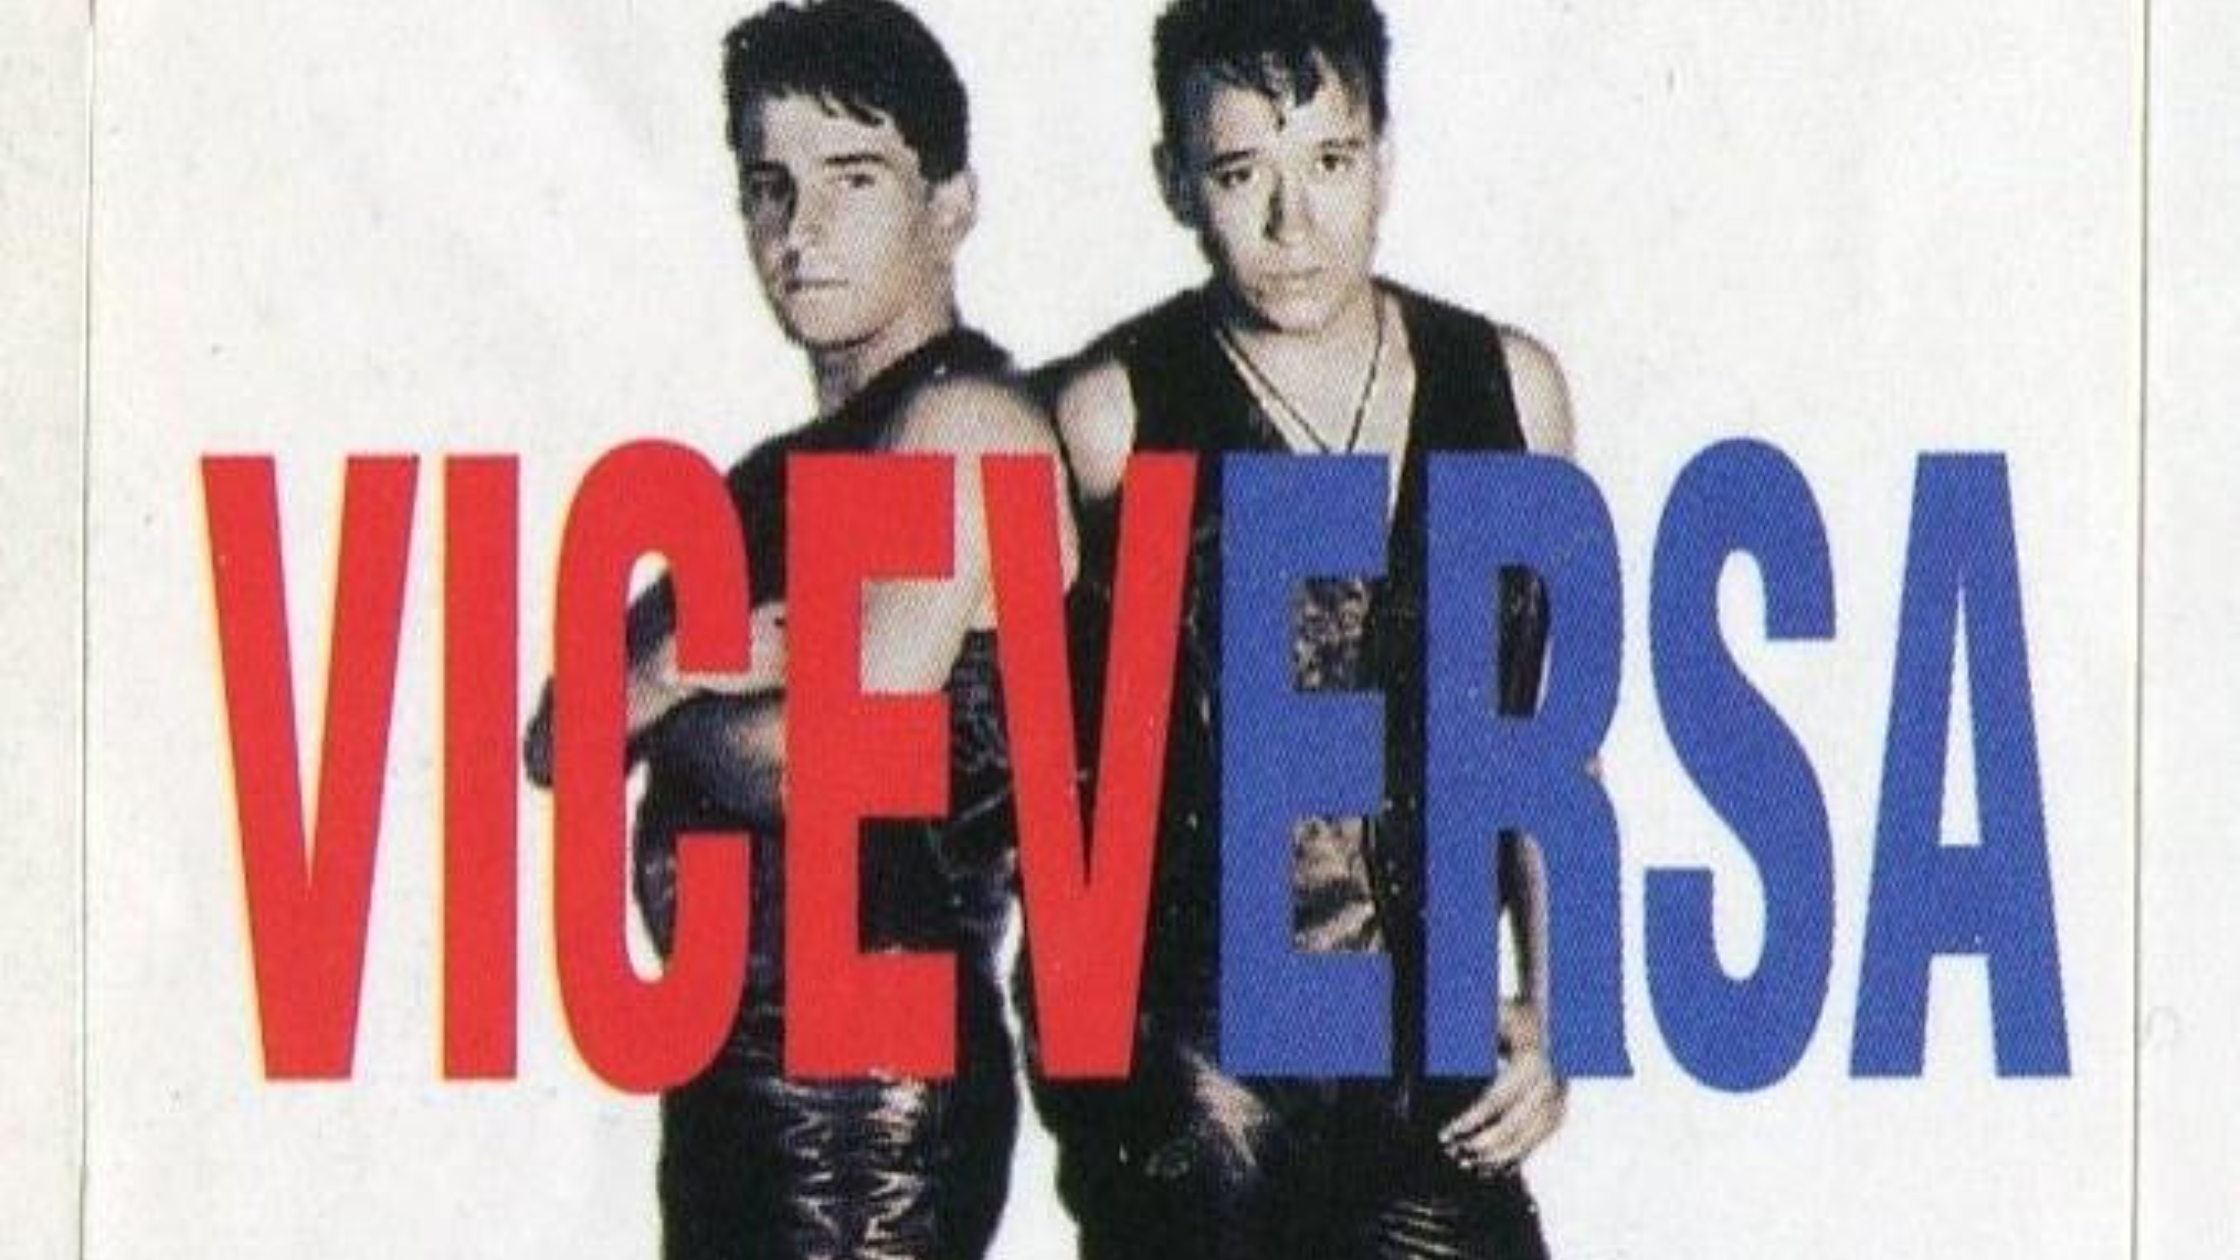 Viceversa es el grupo que popularizó la canción "Ella (tu piel morena)" en los 90